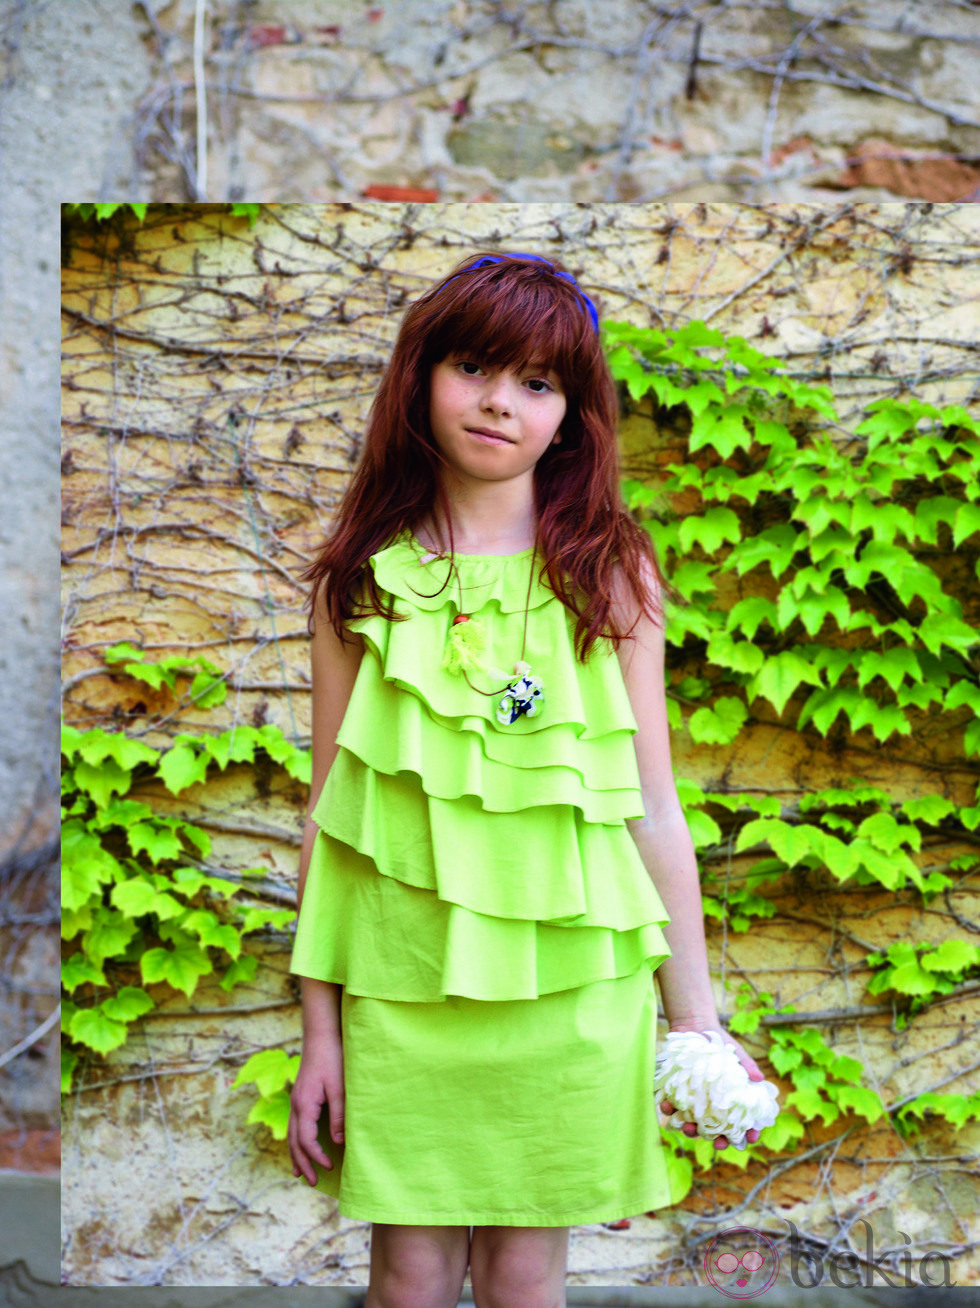 Vestido verde mint de la colección verano 2012 de Benetton Niños